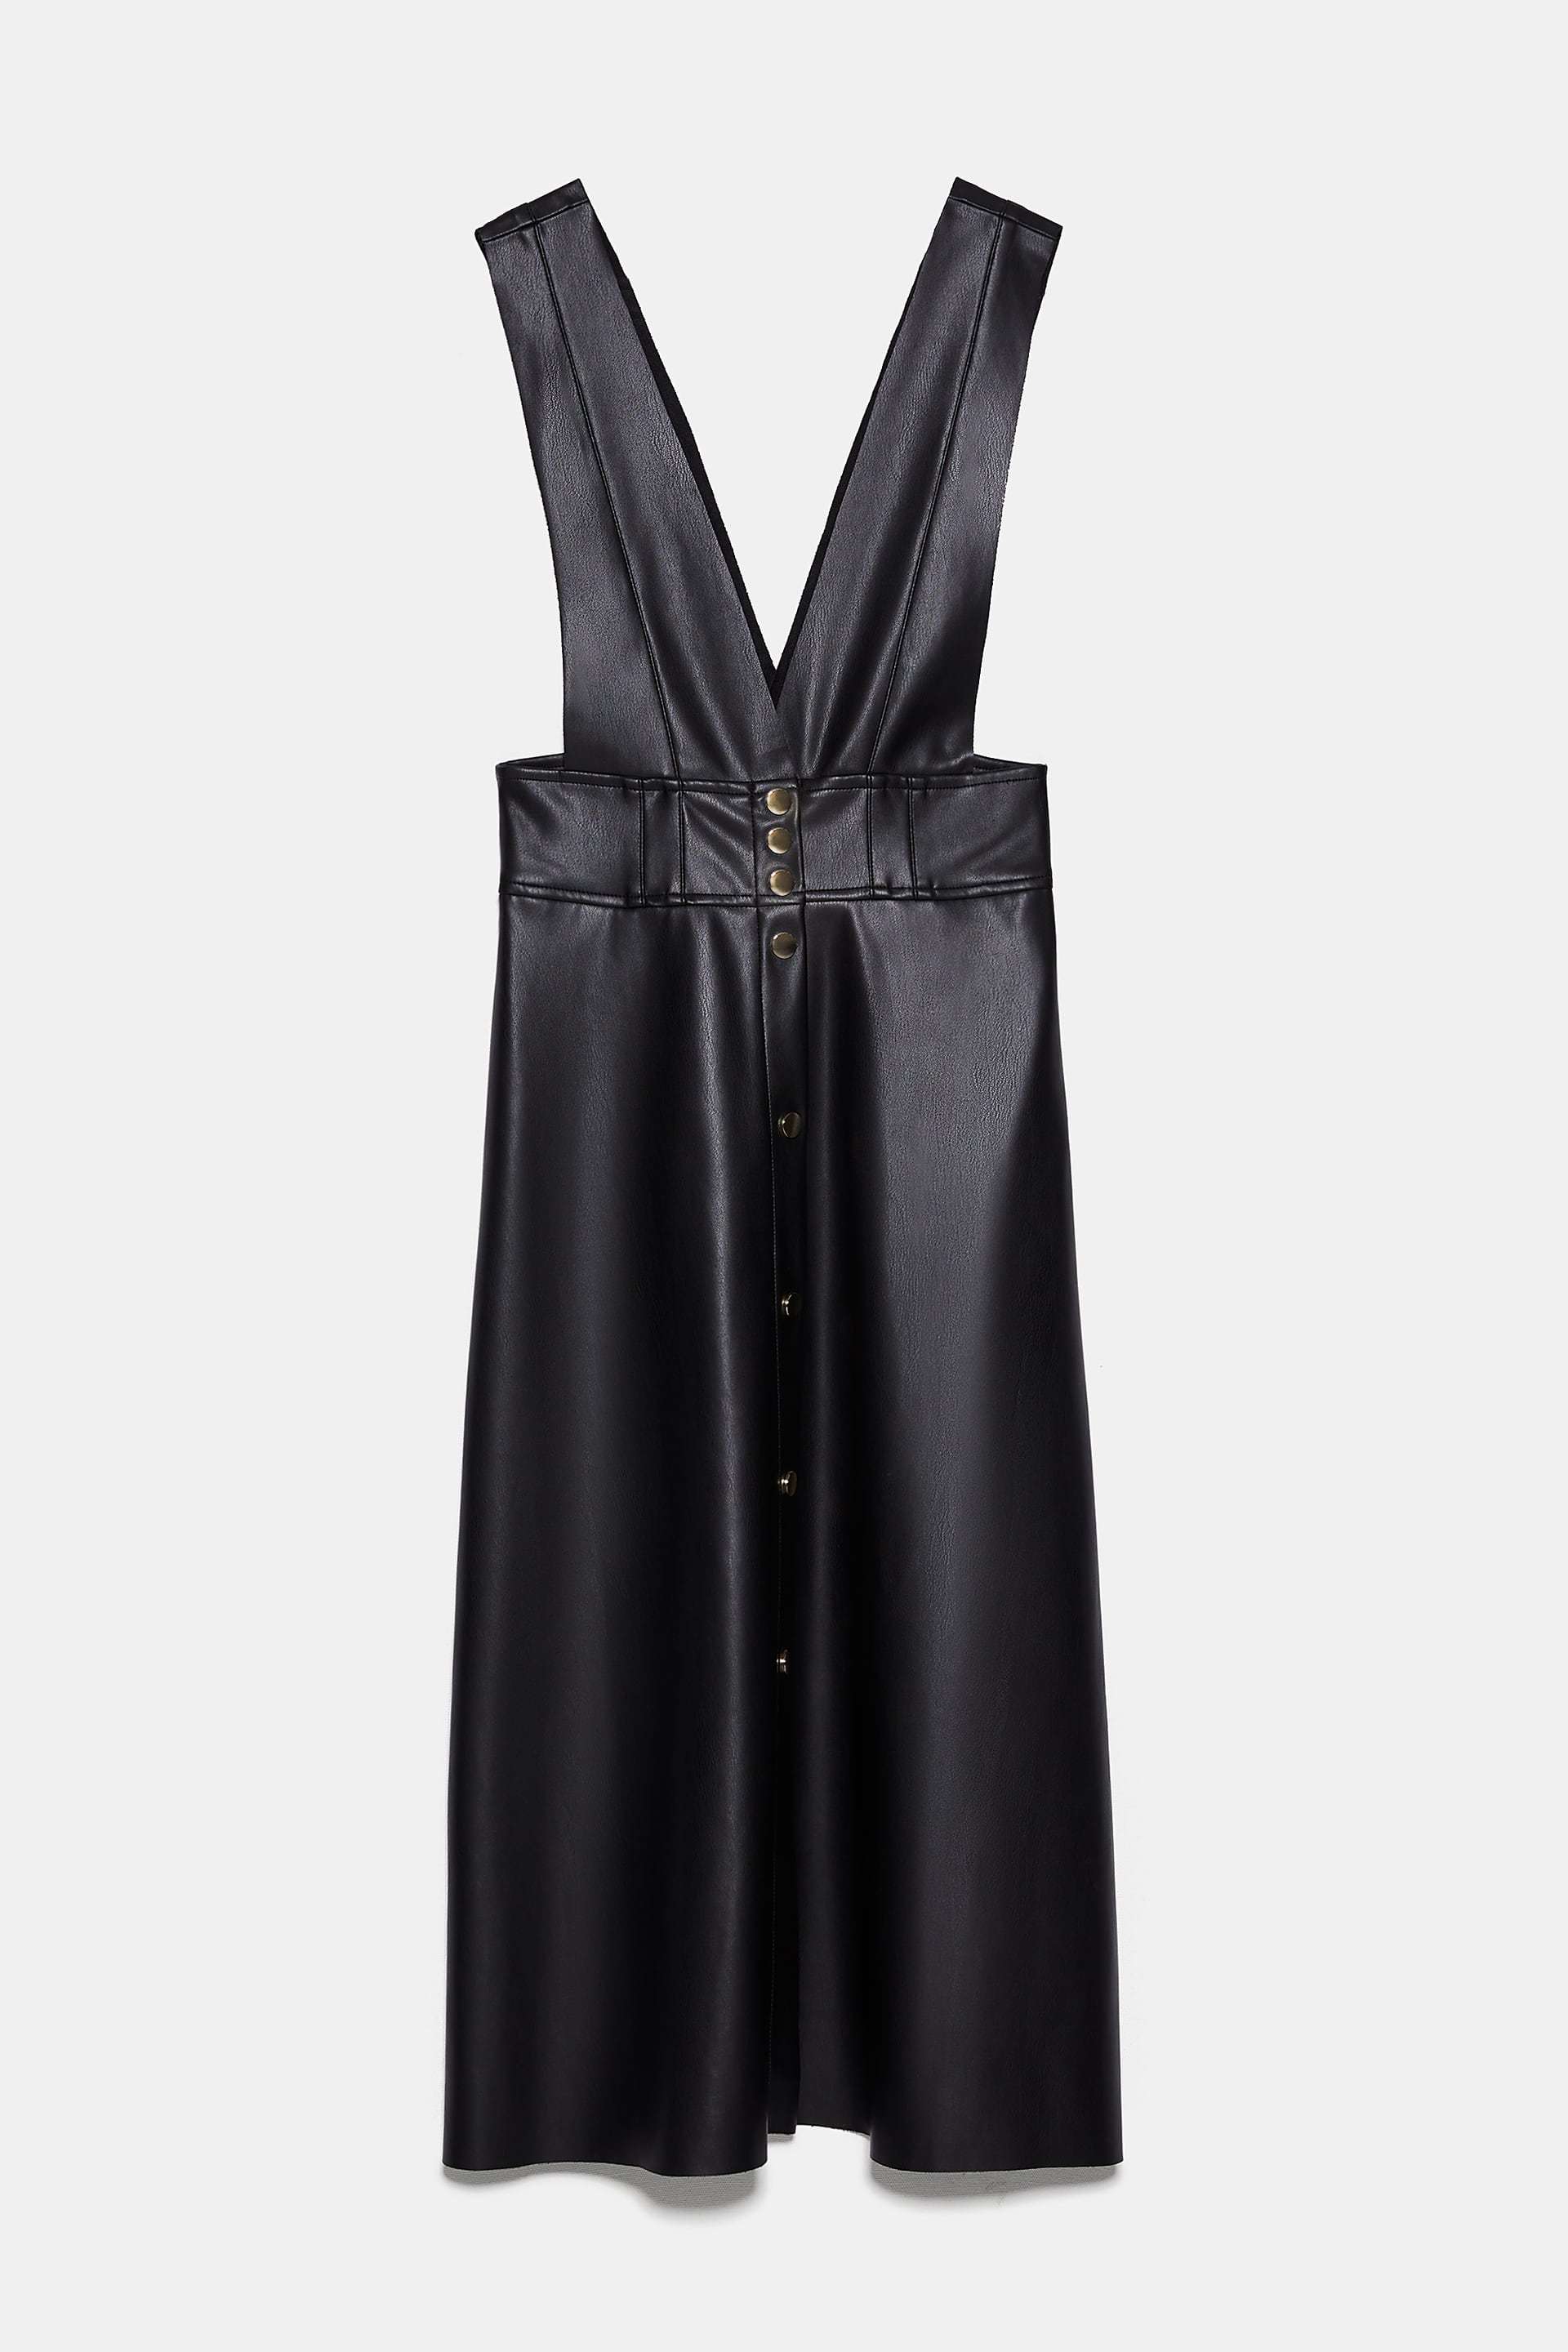 Vestido de Zara: 29,99euros